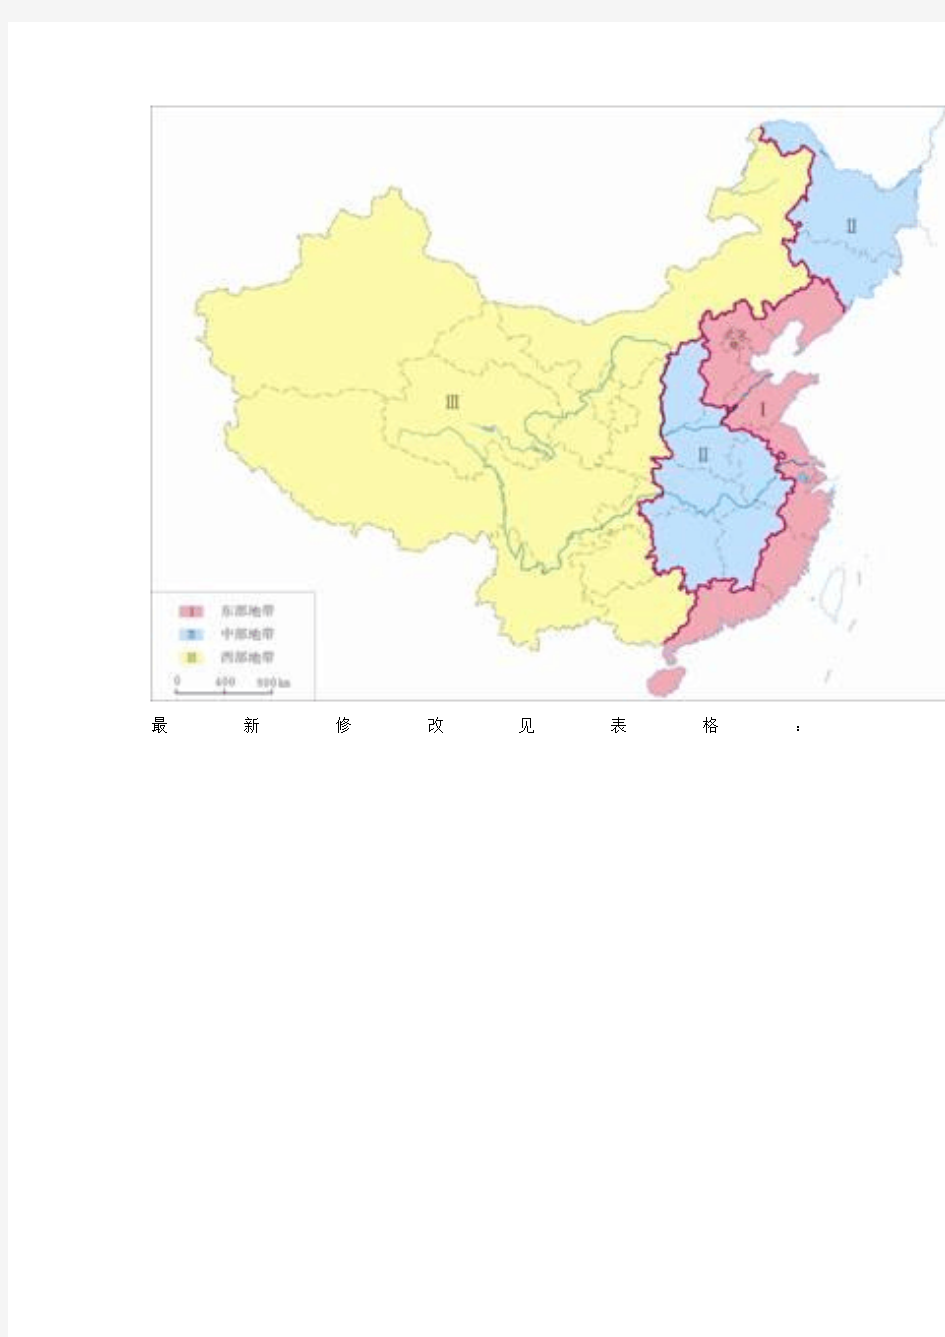 东中西部的划分、东北西北华北华东华南西南华中等的划分